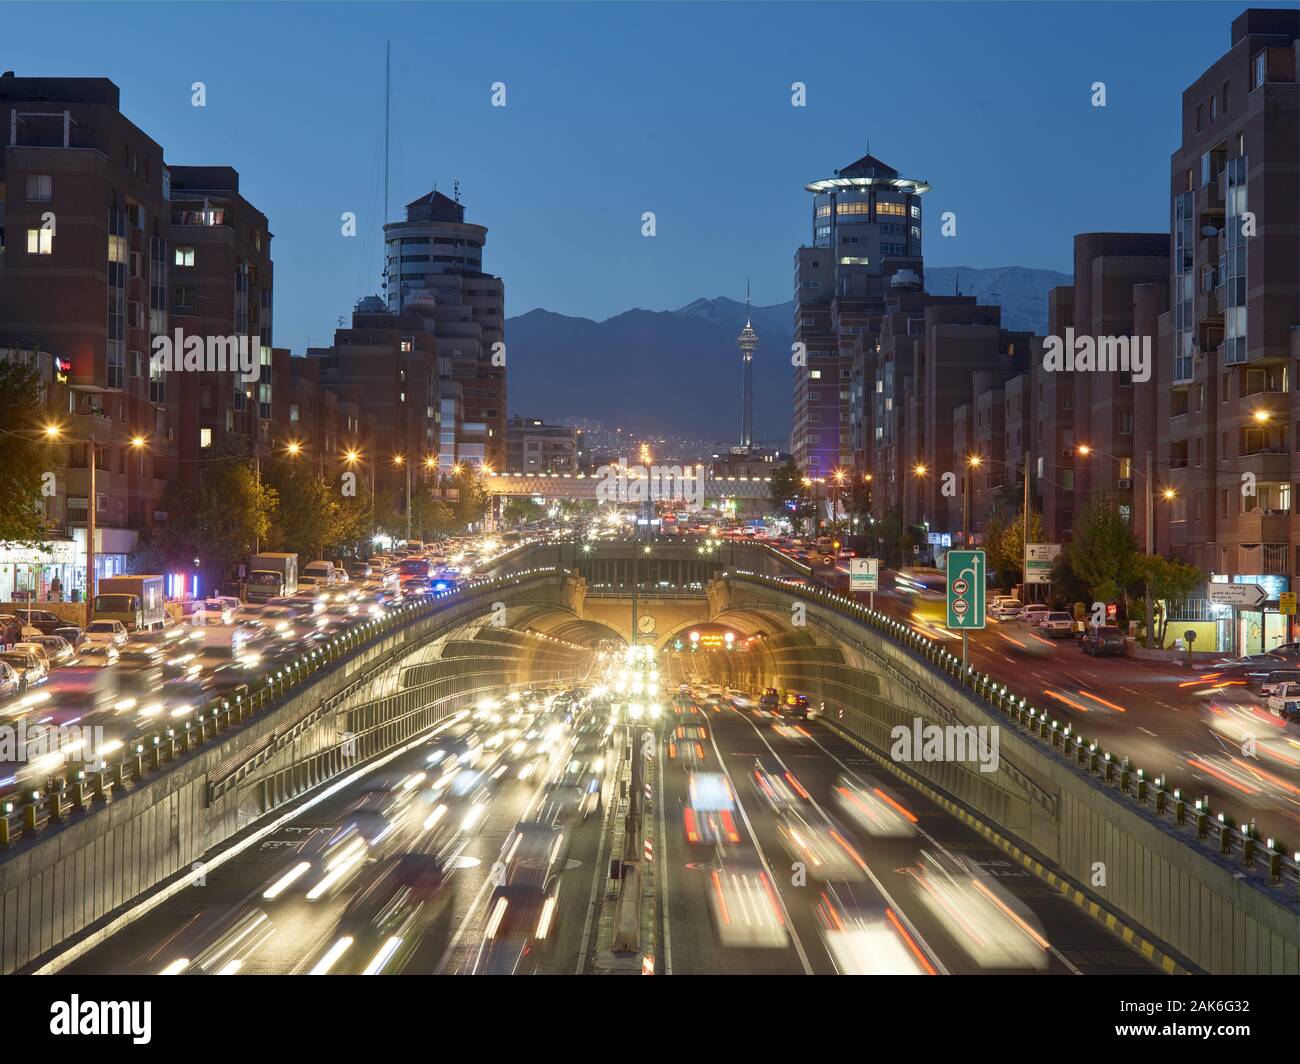 Teheran: Stadtautobahn mit hohem Verkehrsaufkommen am Abend, Iran | usage worldwide Stock Photo